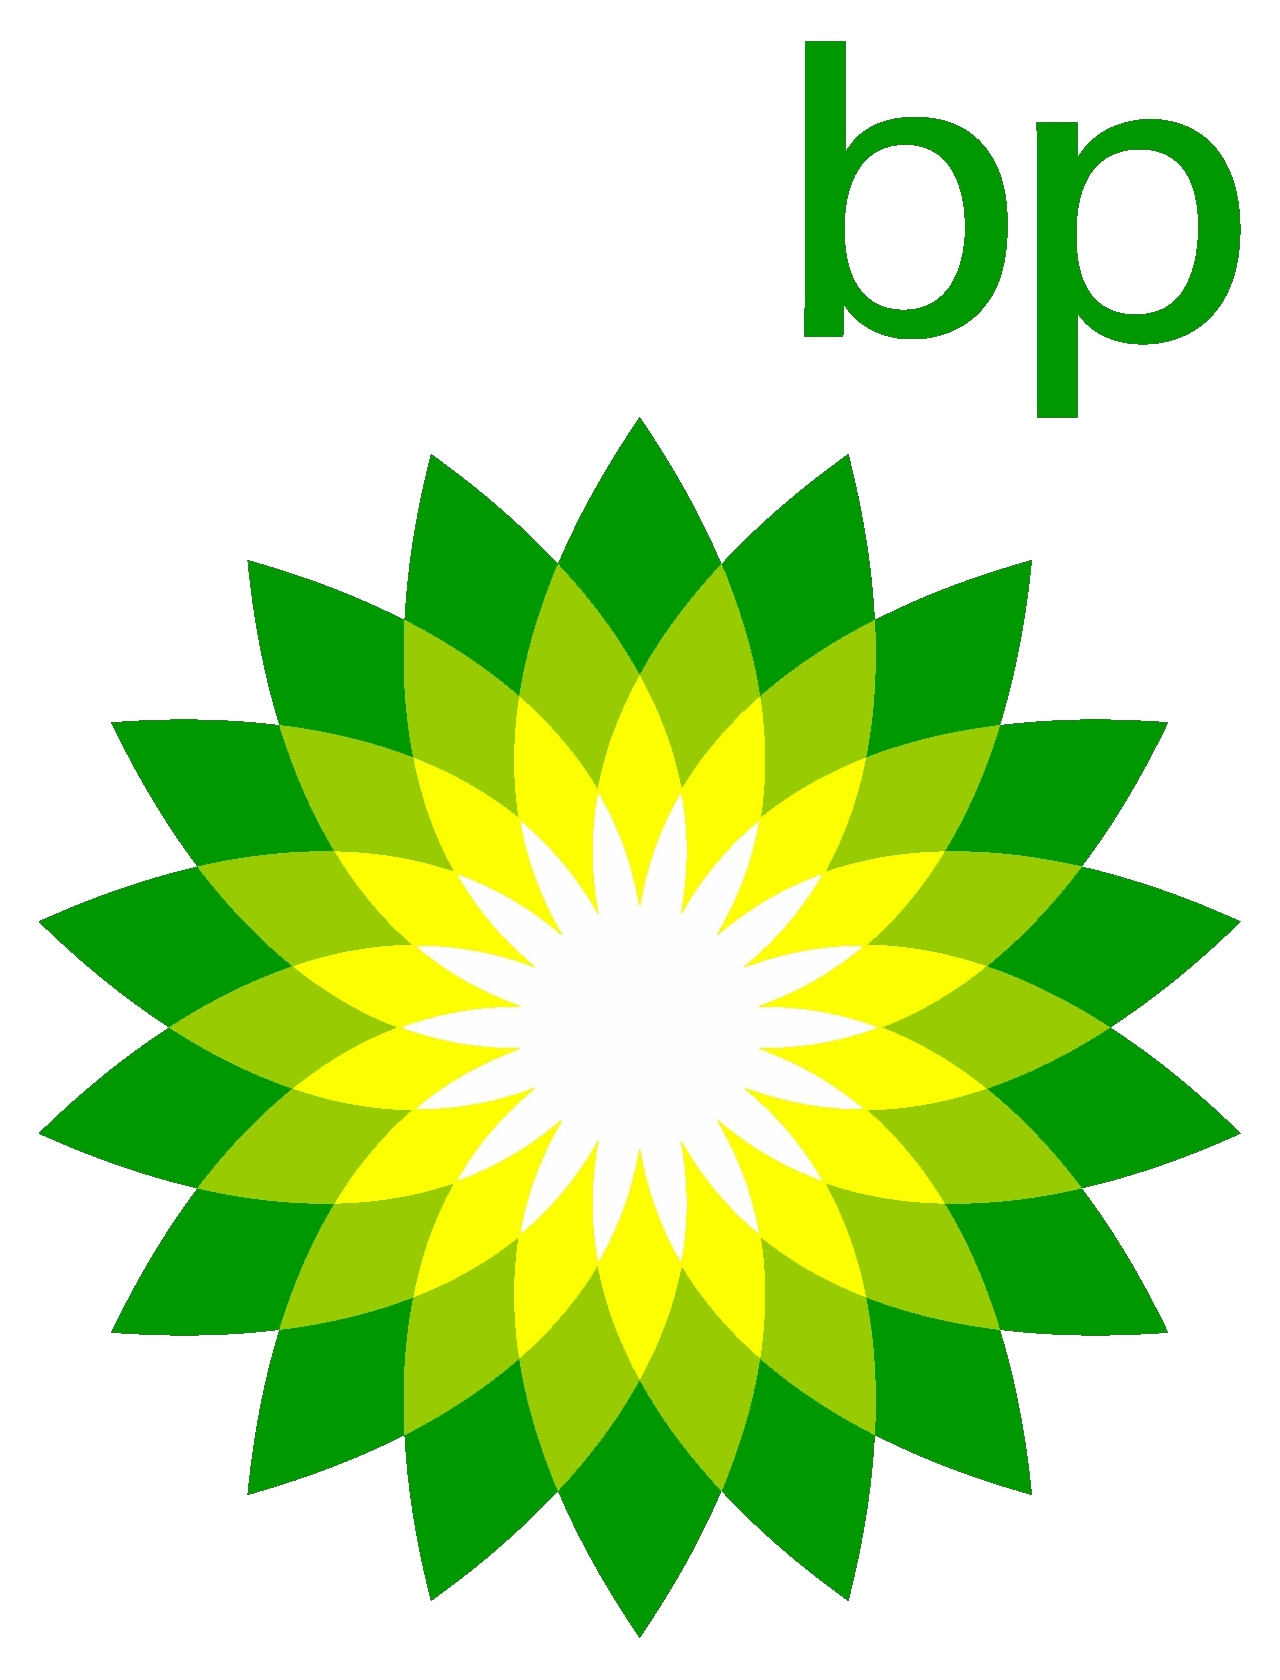 British Petroleum (BP) logo